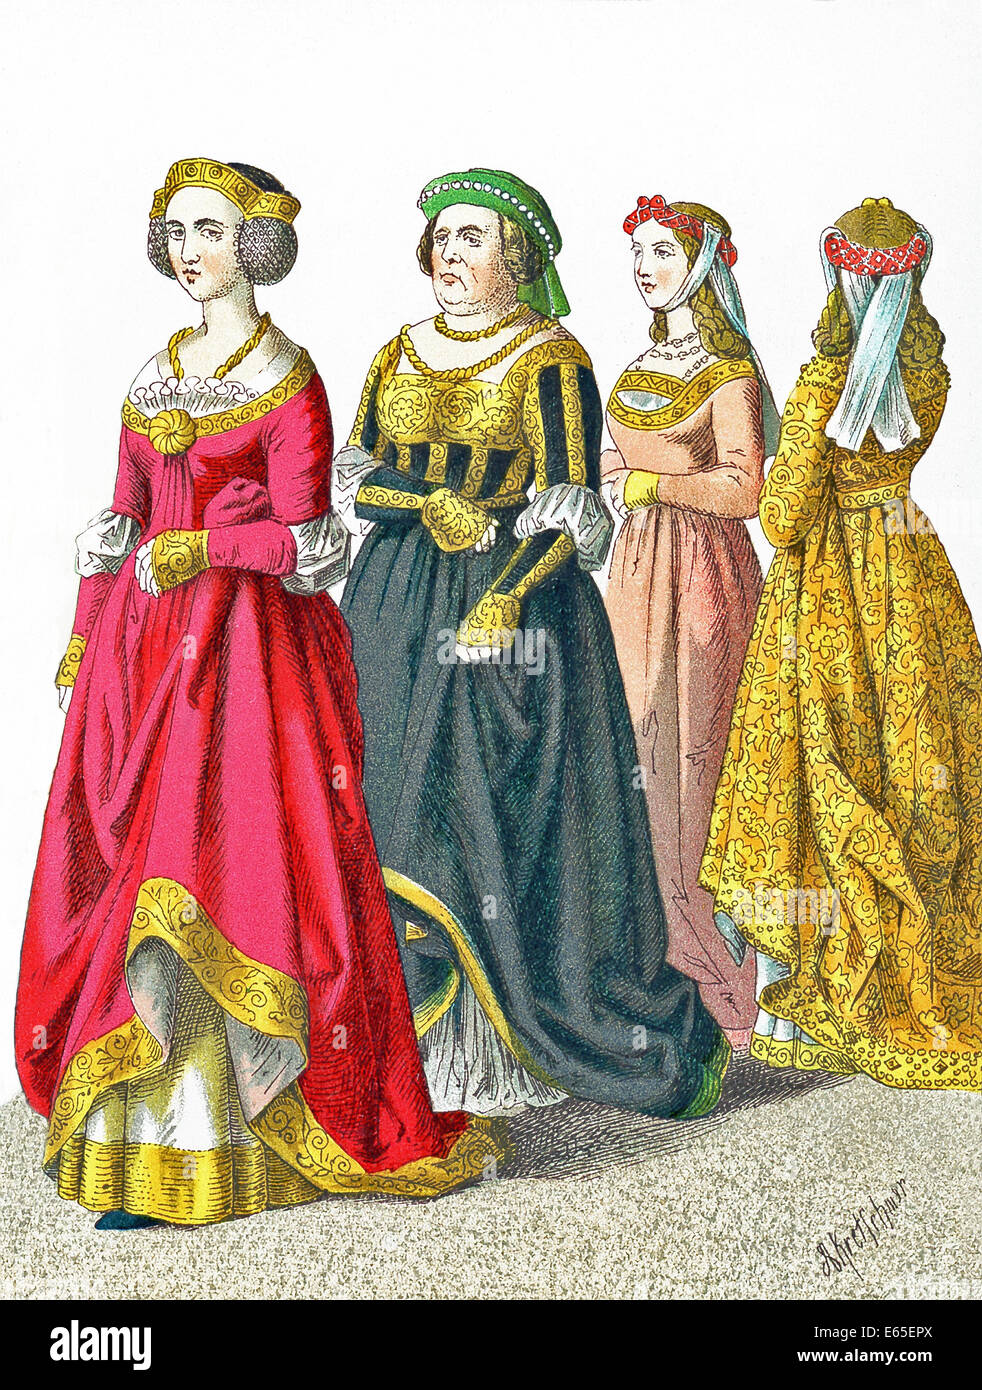 Le figure qui rappresentate sono una signora tedesca di rango e tre cittadini femmina tra A.D. 1450 e 1500. Foto Stock